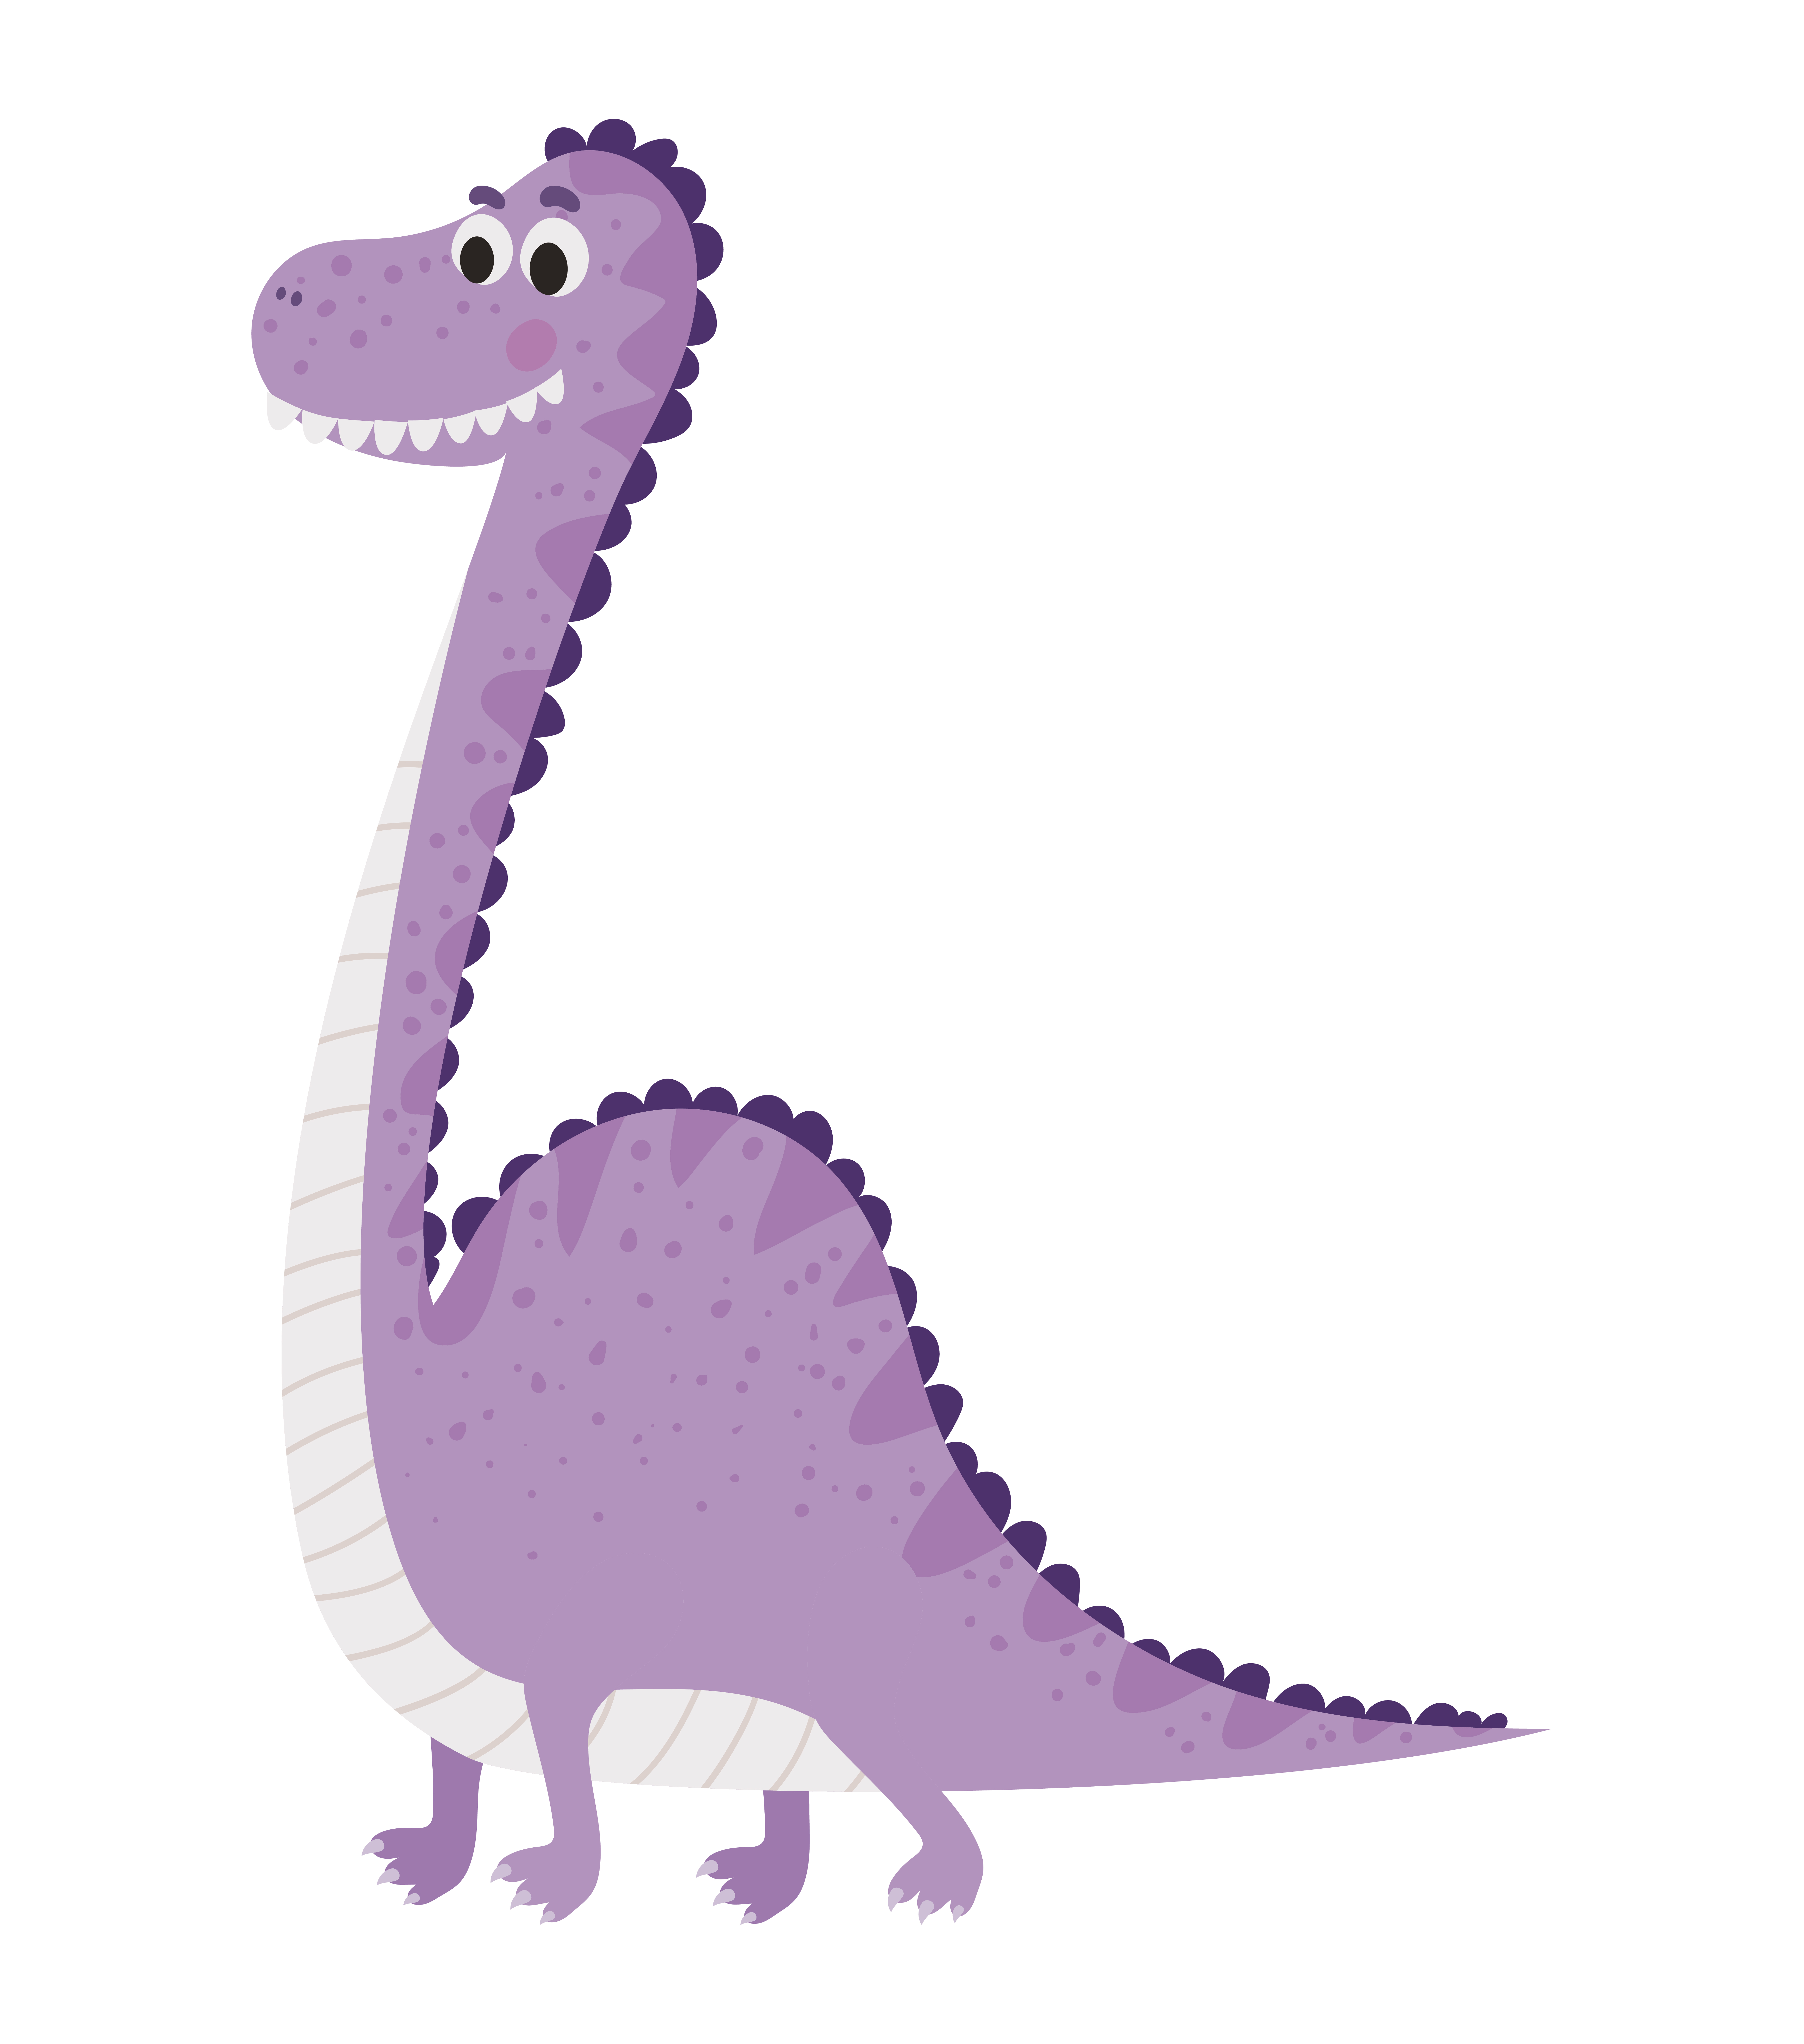 ilustração infantil de um dinossauro roxo 2740673 Vetor no Vecteezy